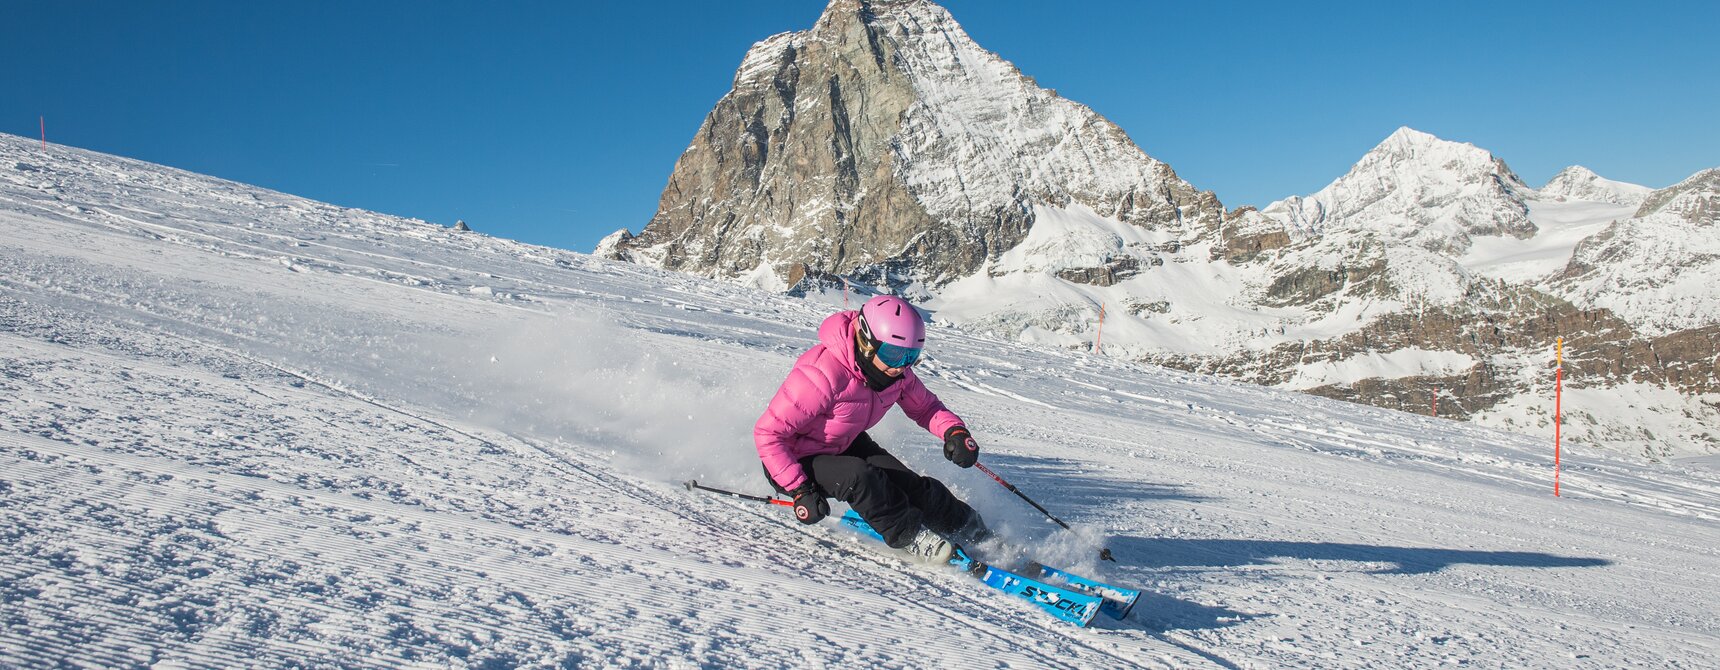 Eine Frau fährt Ski und im Hintergrund ist das Matterhorn | © Michael Portmann